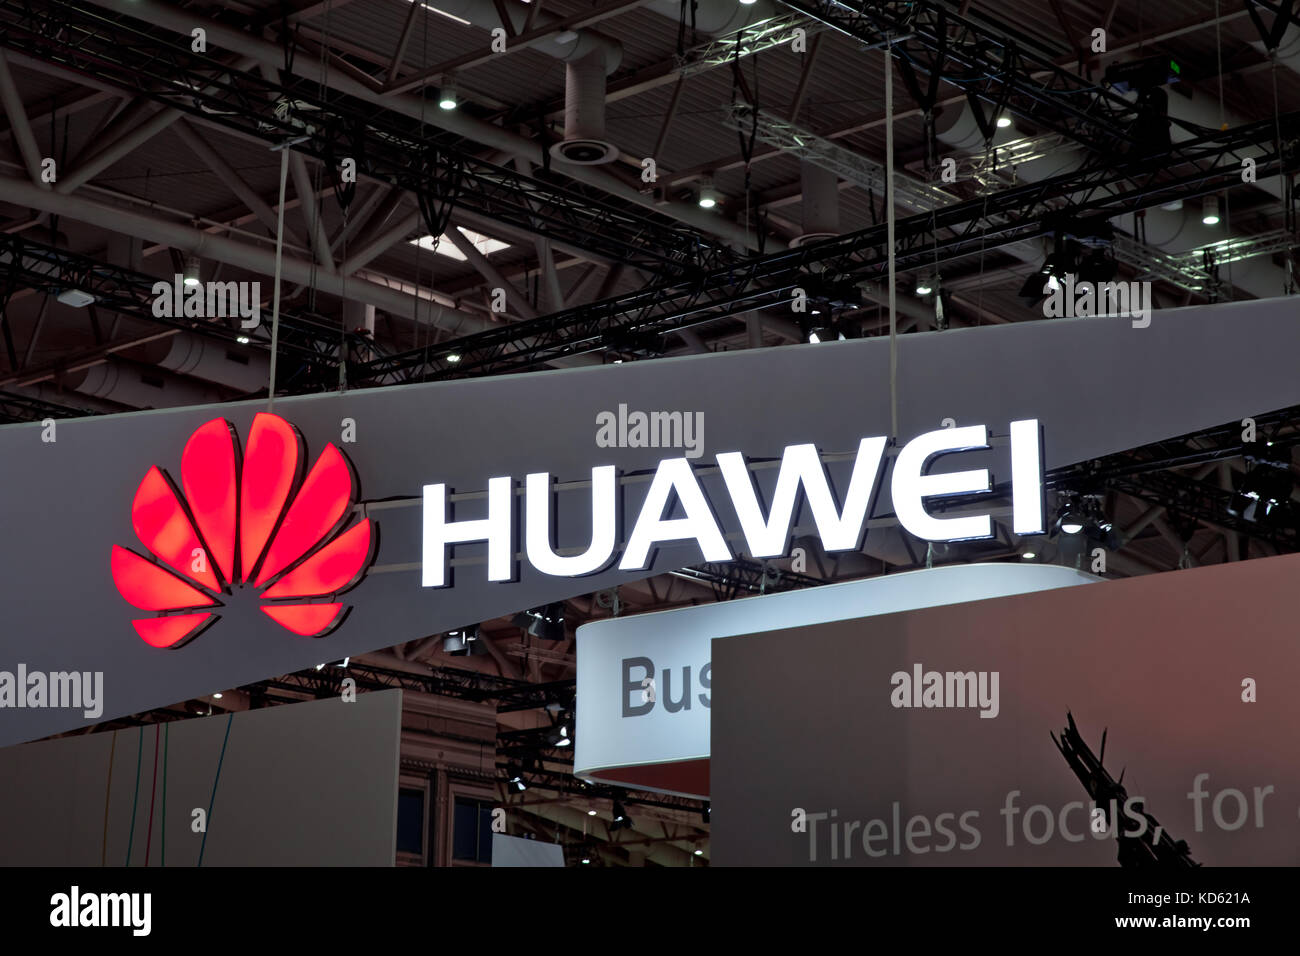 Logo de la société huawei sur le mur. Huawei Technologies Co. est une multinationale chinoise la mise en réseau et l'équipement de télécommunications et de services Banque D'Images